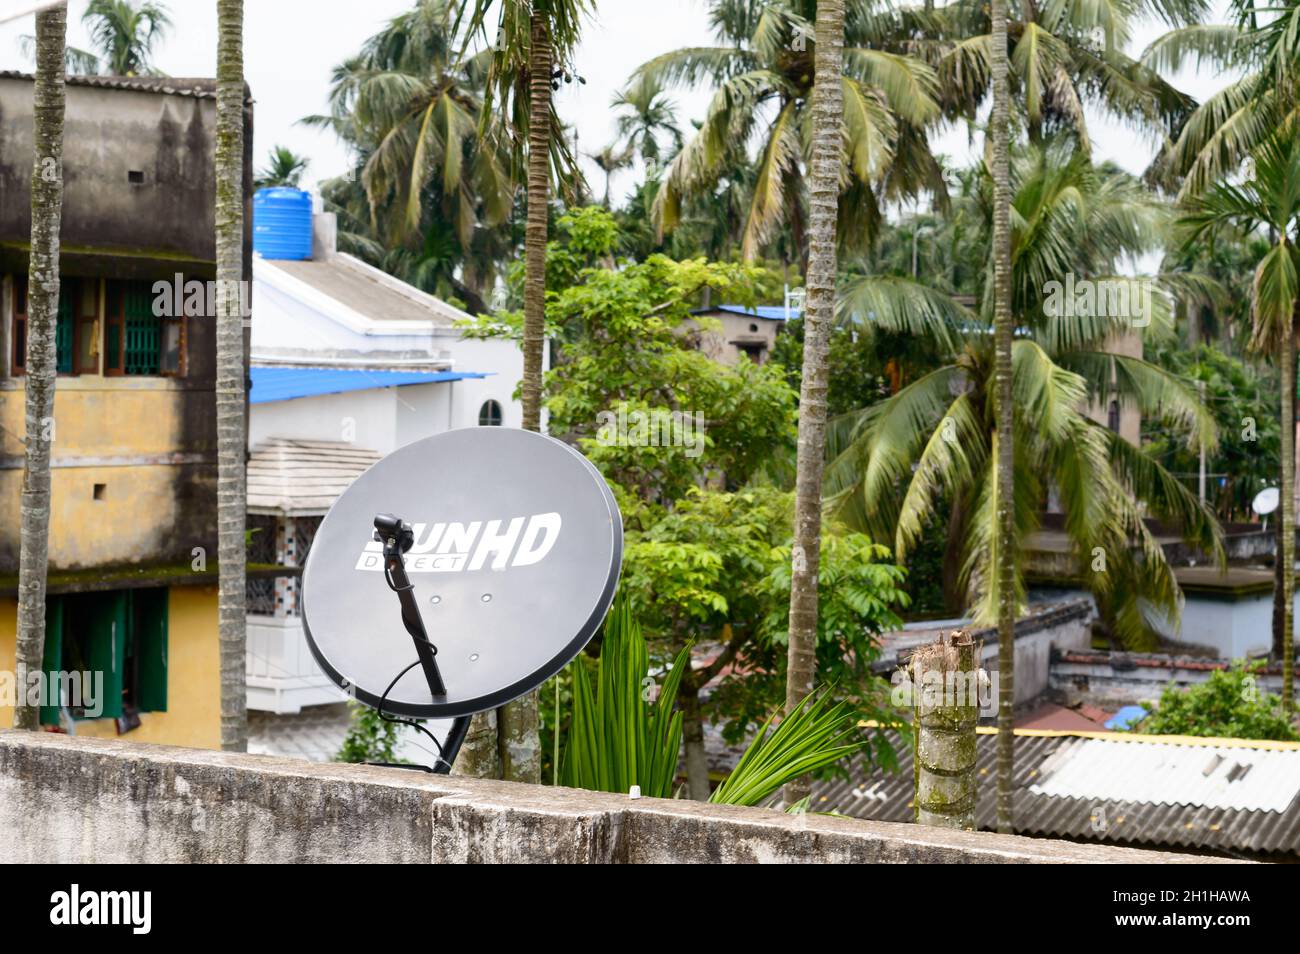 Installation einer Fernsehantenne oder einer Fernsehantenne auf dem Dach. Teller-TV-Antenne auf dem Dach eines Hauses, Kalkutta, Westbengalen, Indien, Südasien-Pazifik-S Stockfoto